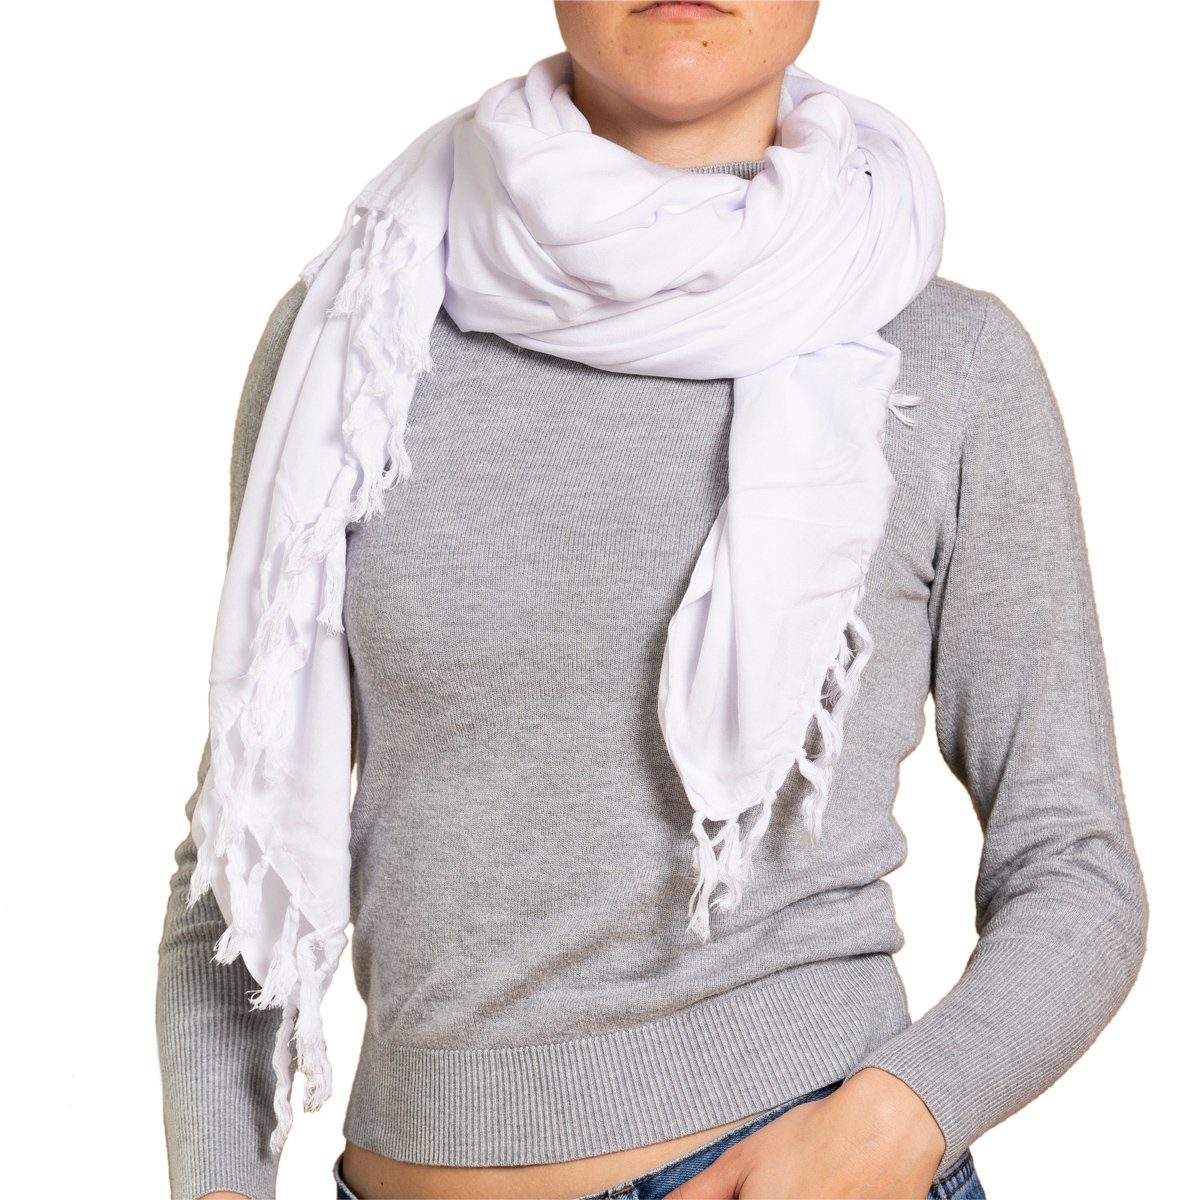 PANASIAM Halstuch weicher Schal aus hochwertiger Viskose den man als Schultertuch Stola, Winterschal oder als wunderbar großes Halstuch tragen kann weiß